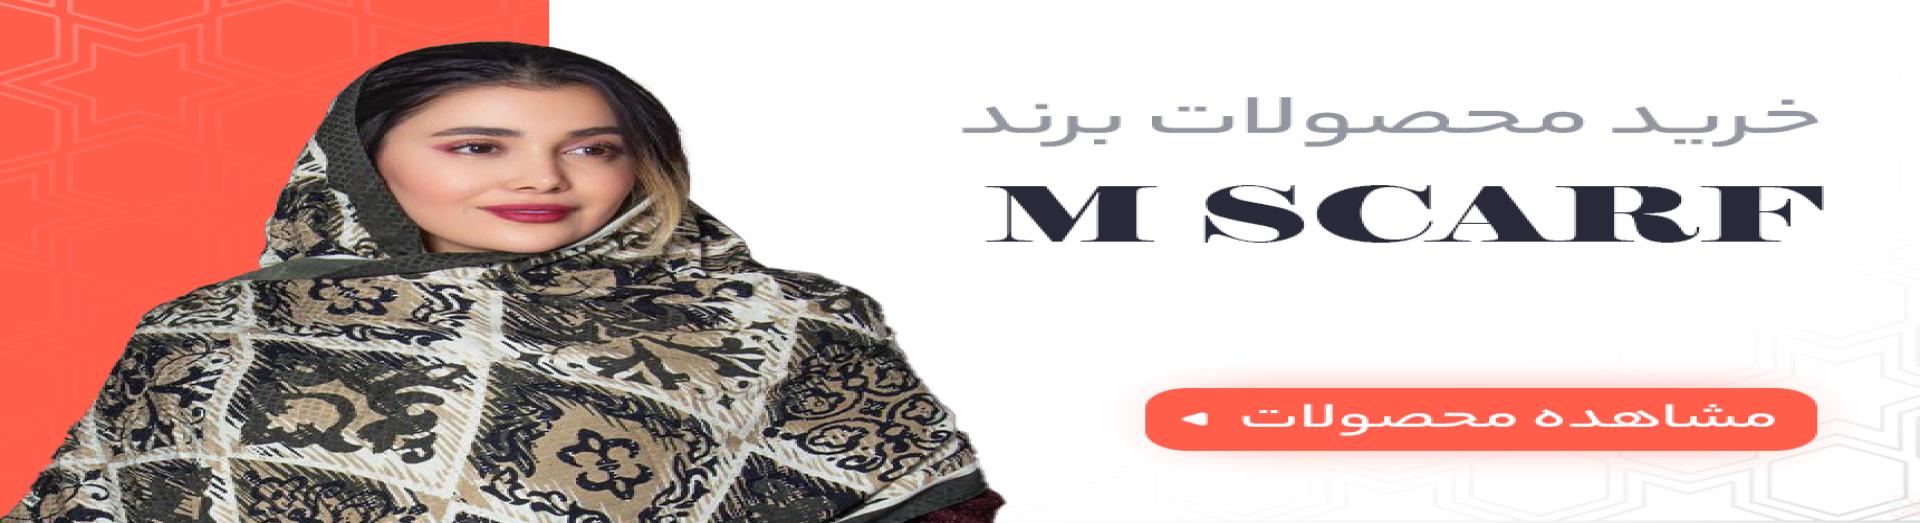 محصولات mscarf